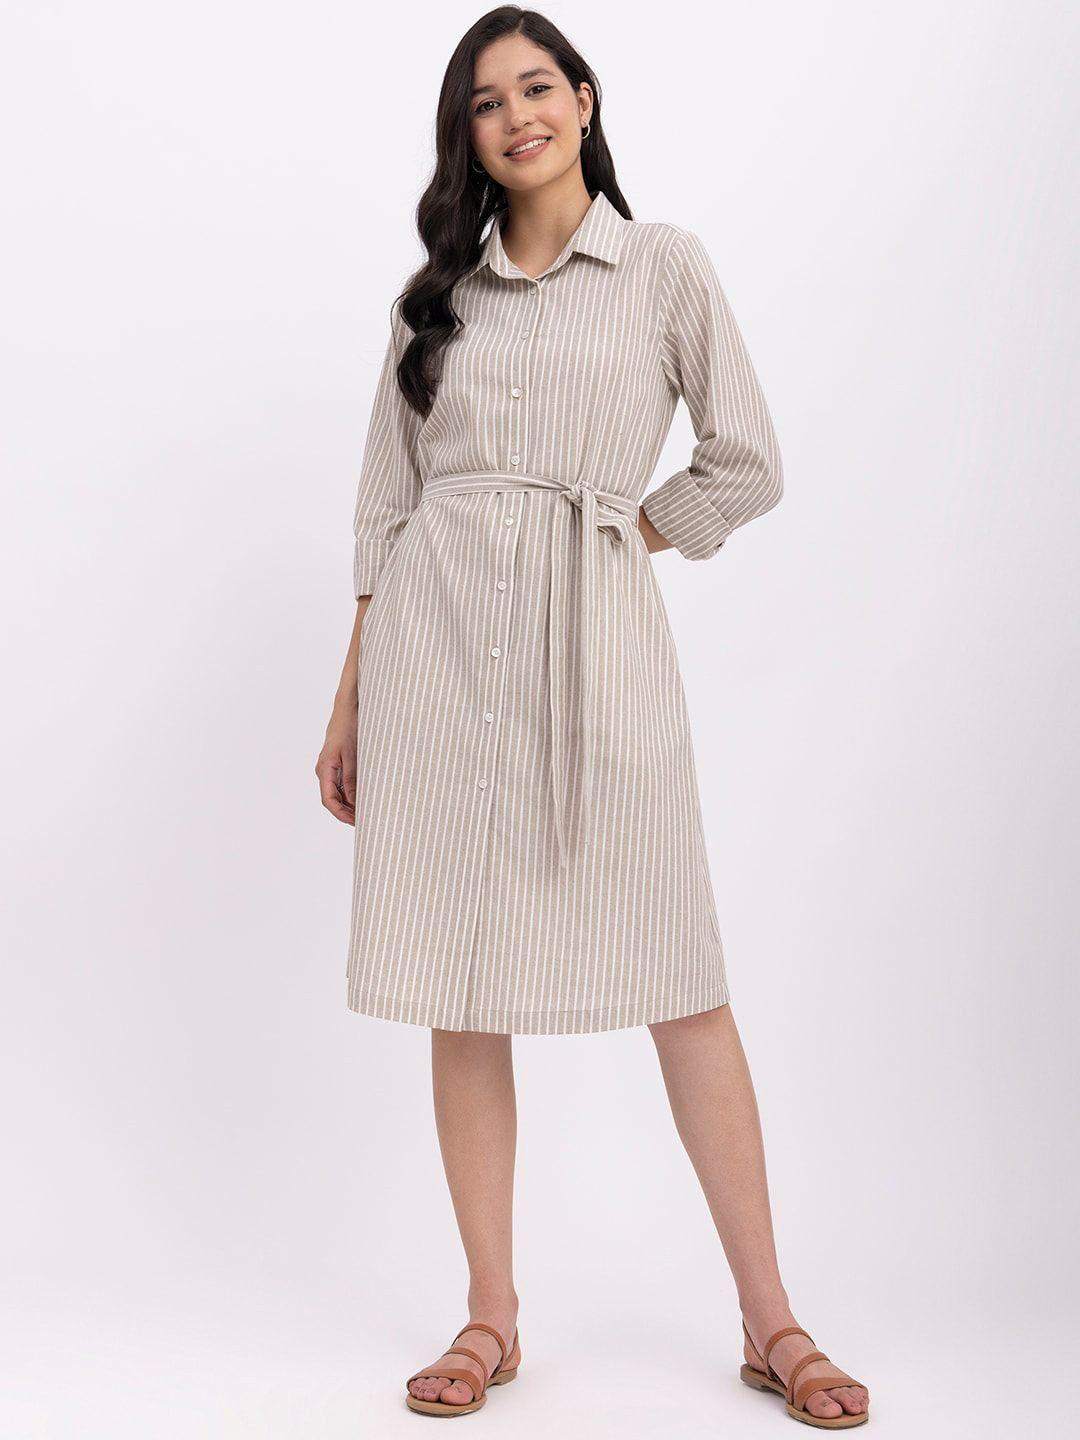 fablestreet striped linen shirt dress with belt